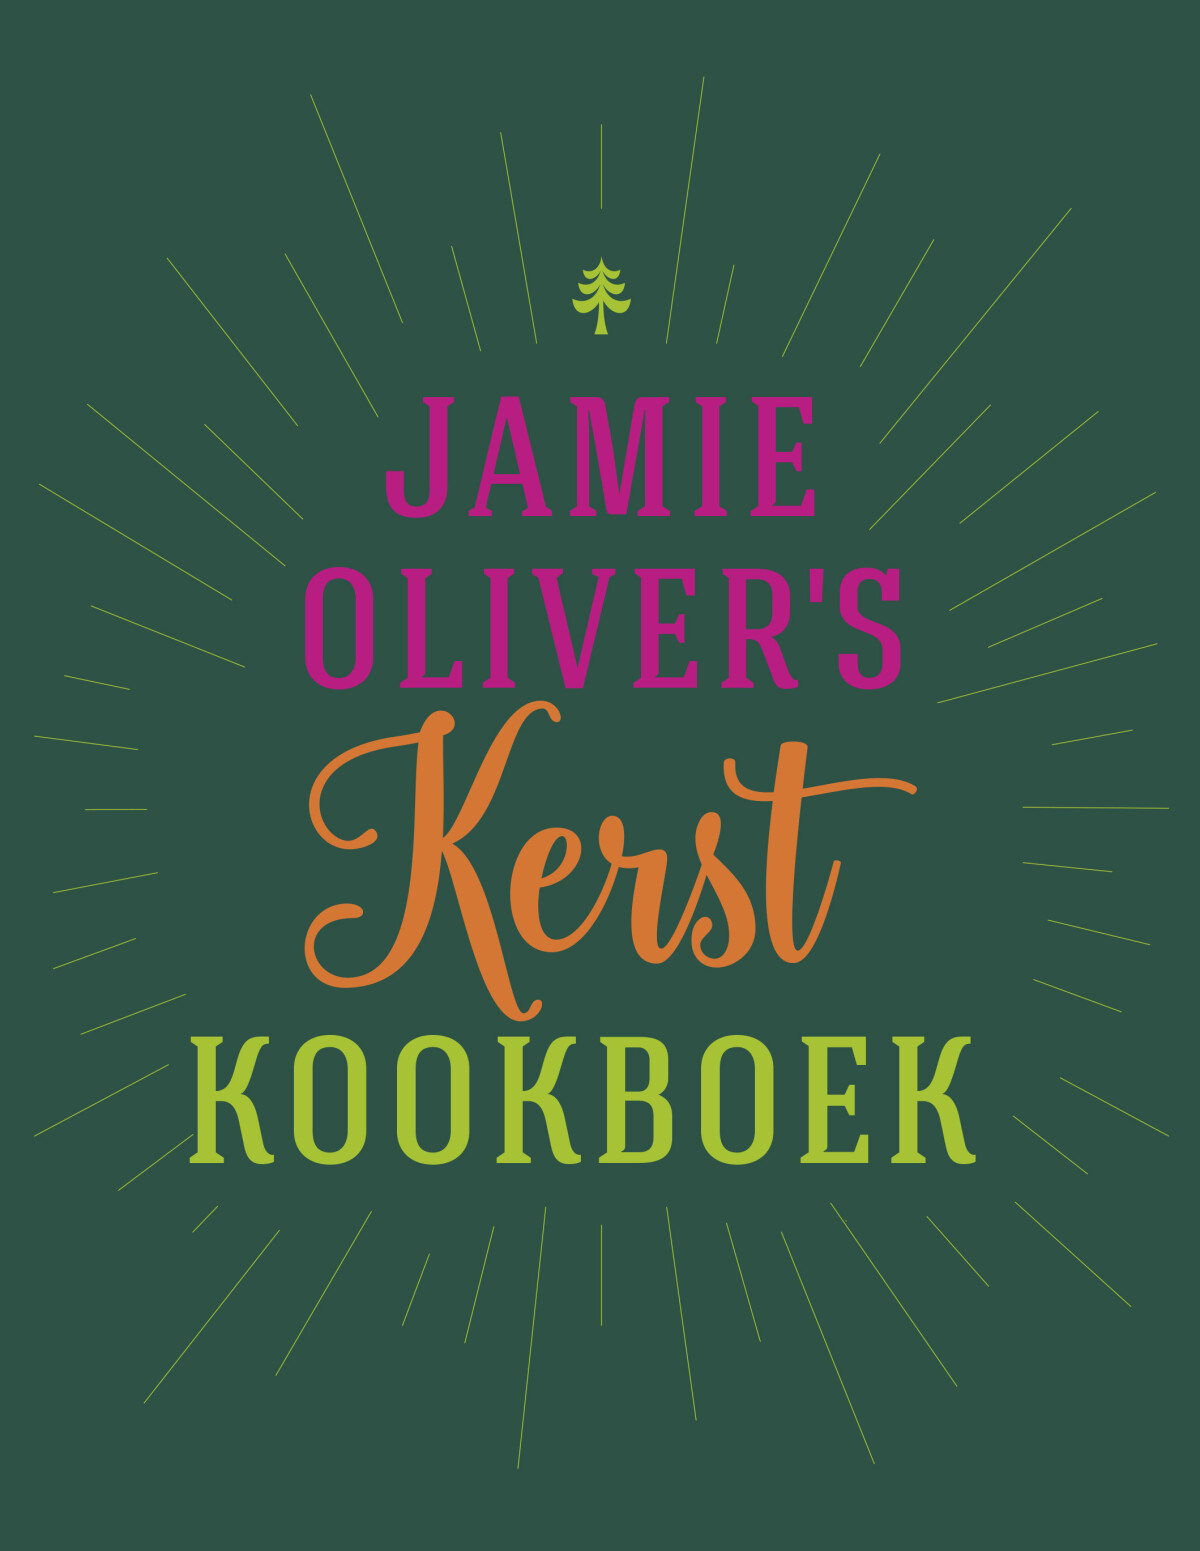 Jamie Oliver's Kerstkookboek